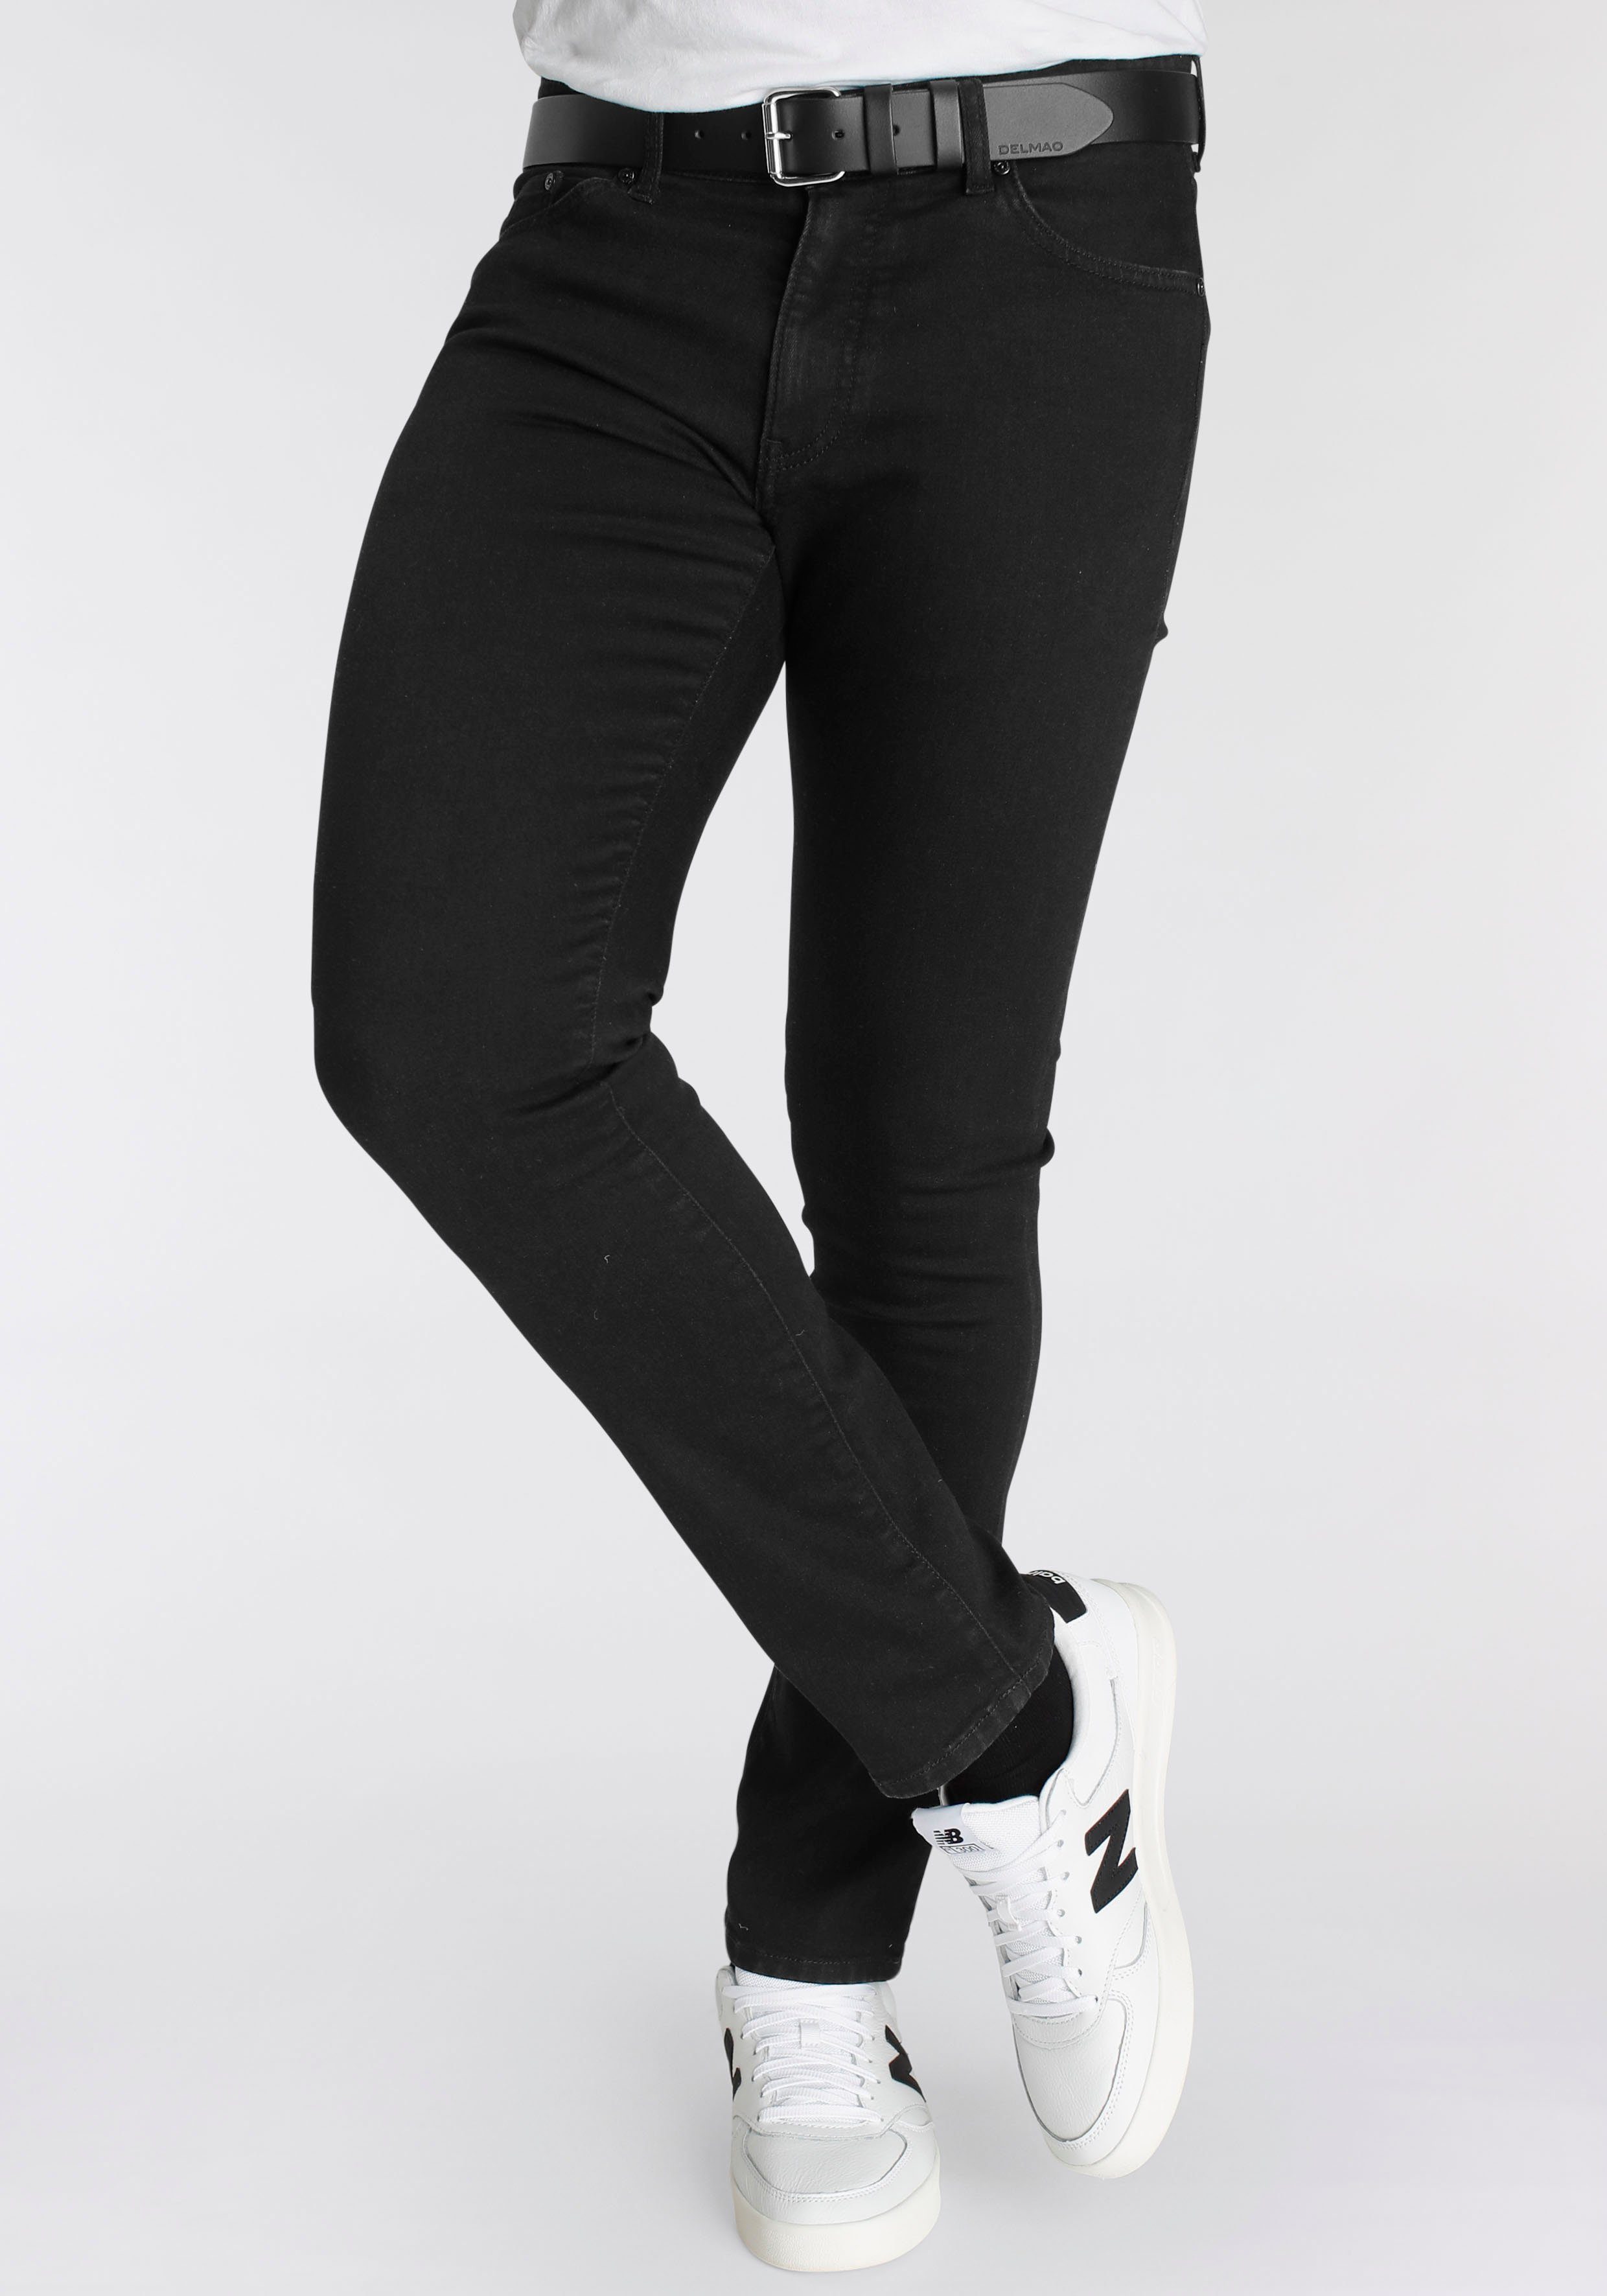 NEUE Stretch-Jeans MARKE! schöner mit Innenverarbeitung \